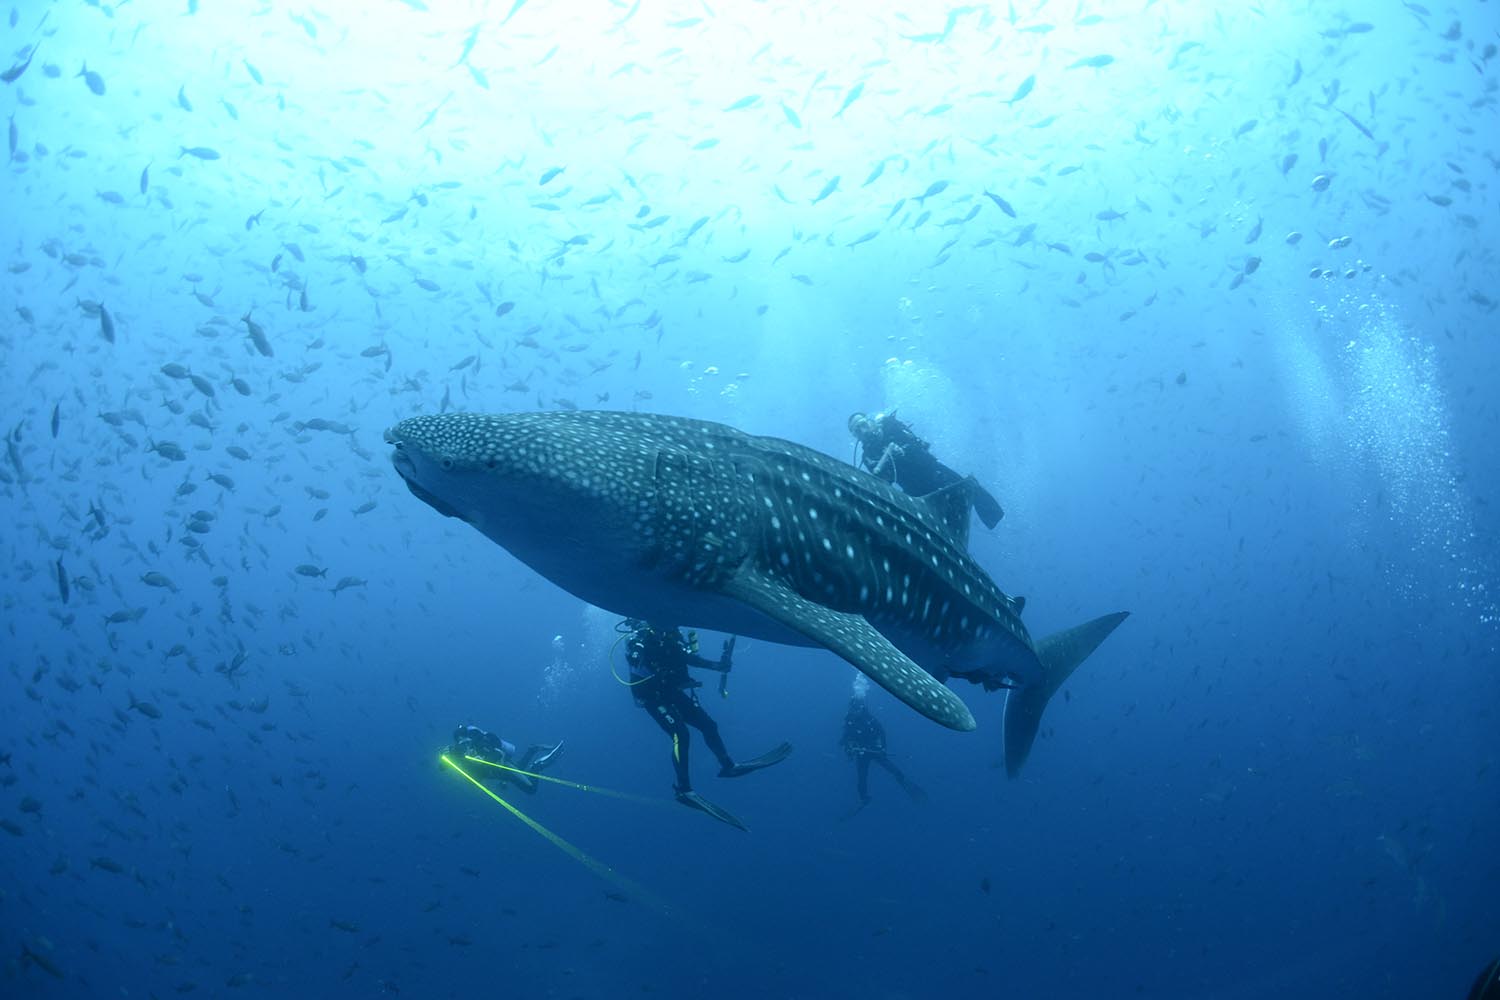 Especial Galápagos. Los tiburones ballenas (Rhincodon typus) son rastreados vía satélite